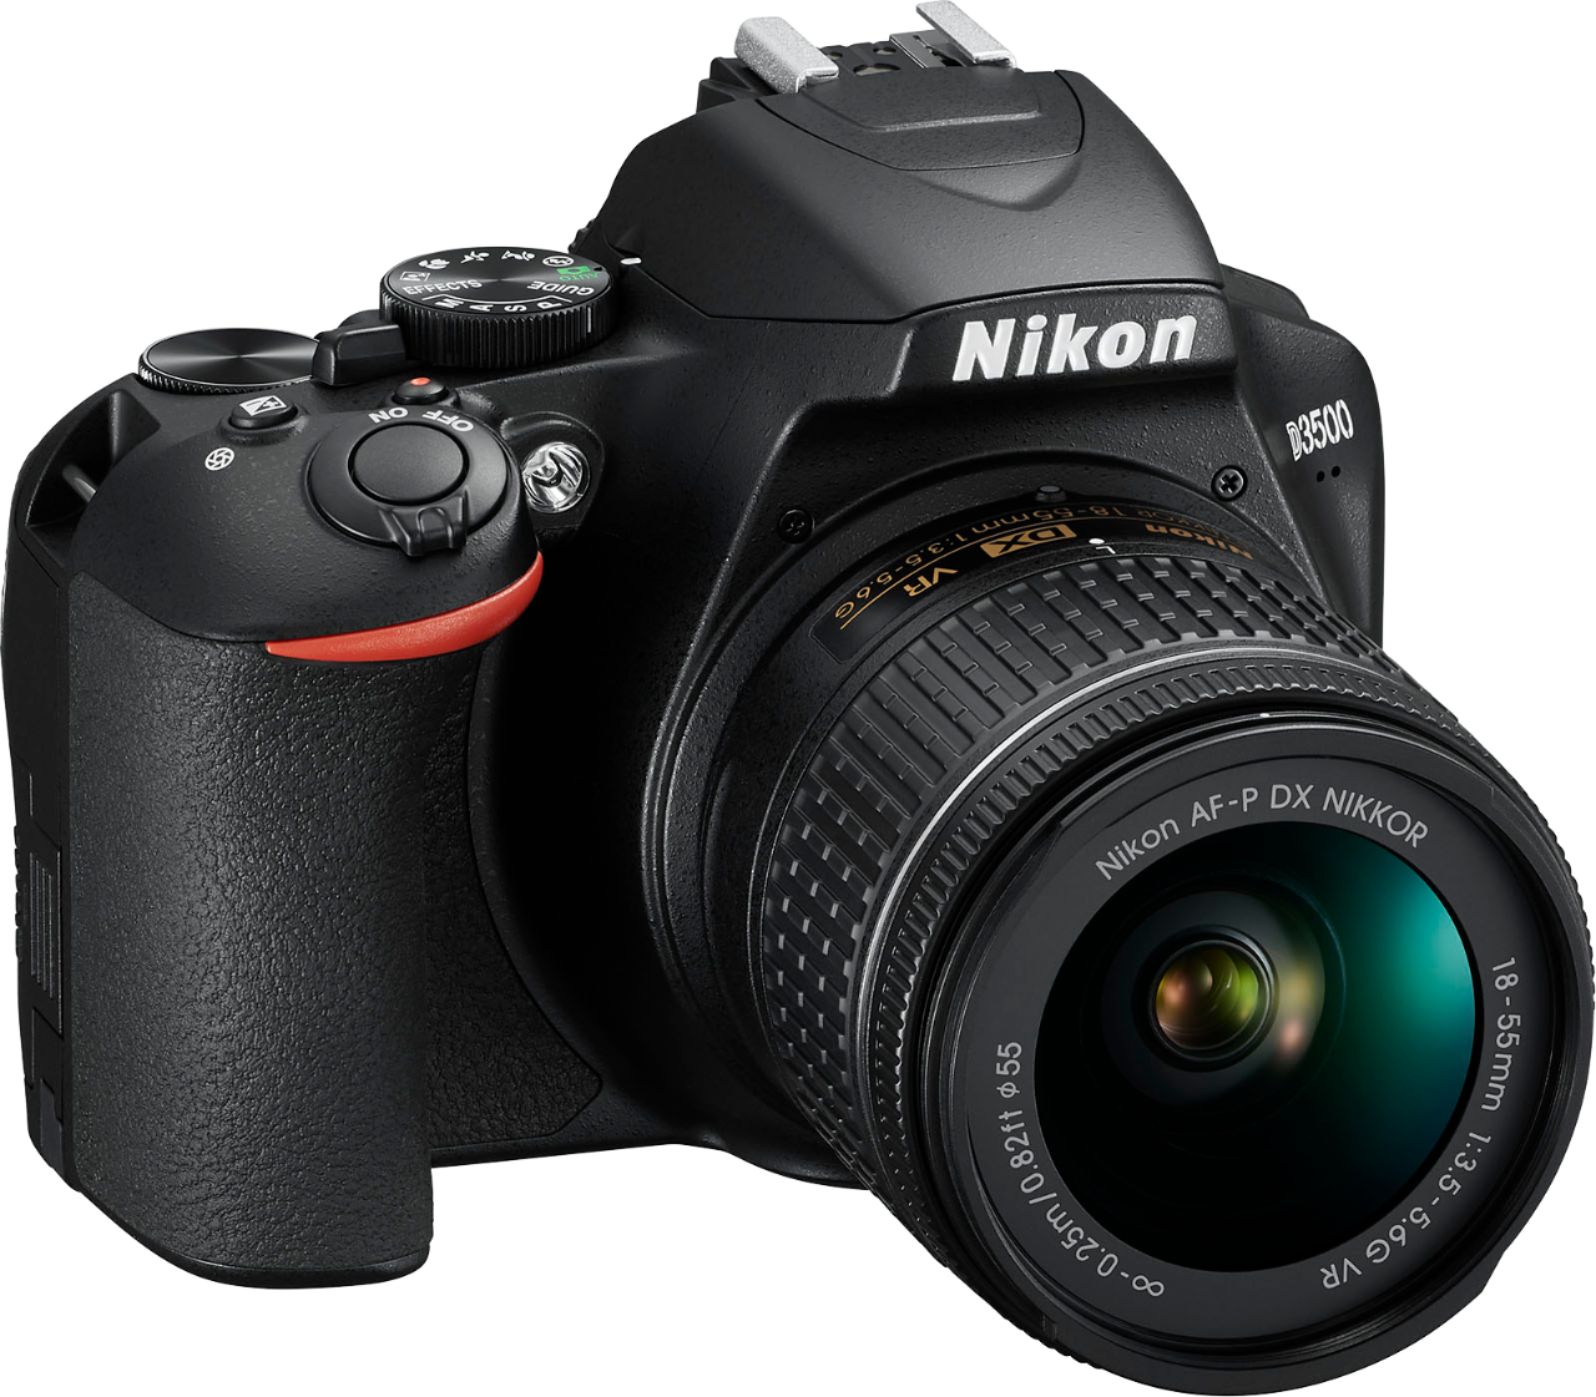 Angle View: Nikon - D3500 DSLR Video Camera with AF-P DX NIKKOR 18-55mm f/3.5-5.6G VR Lens - Black